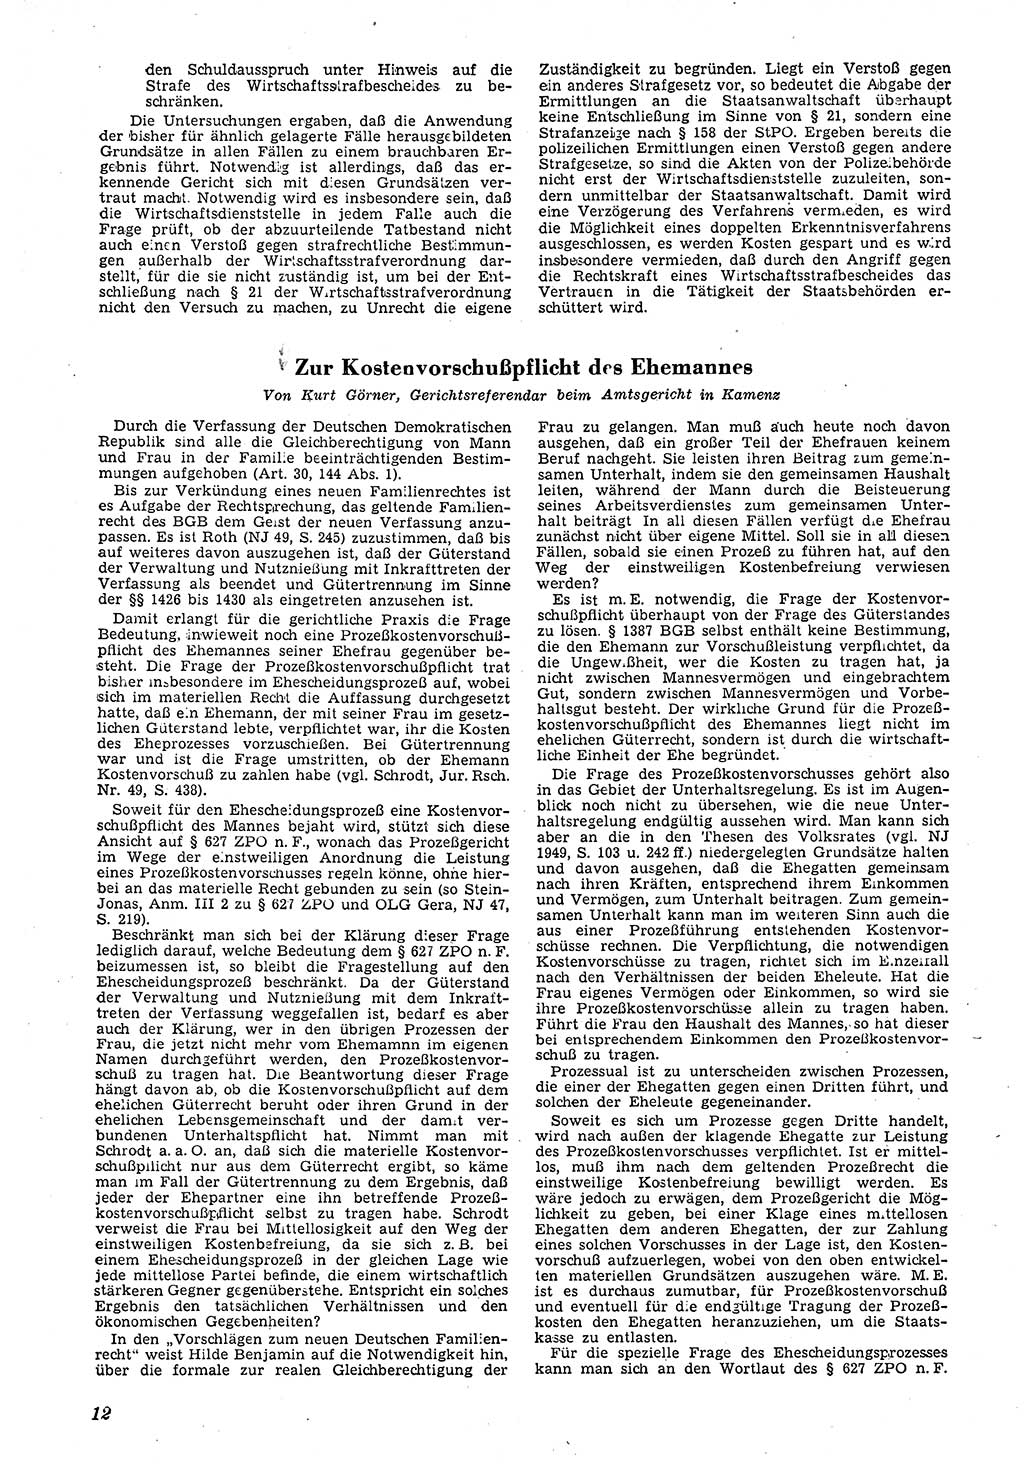 Neue Justiz (NJ), Zeitschrift für Recht und Rechtswissenschaft [Deutsche Demokratische Republik (DDR)], 4. Jahrgang 1950, Seite 12 (NJ DDR 1950, S. 12)